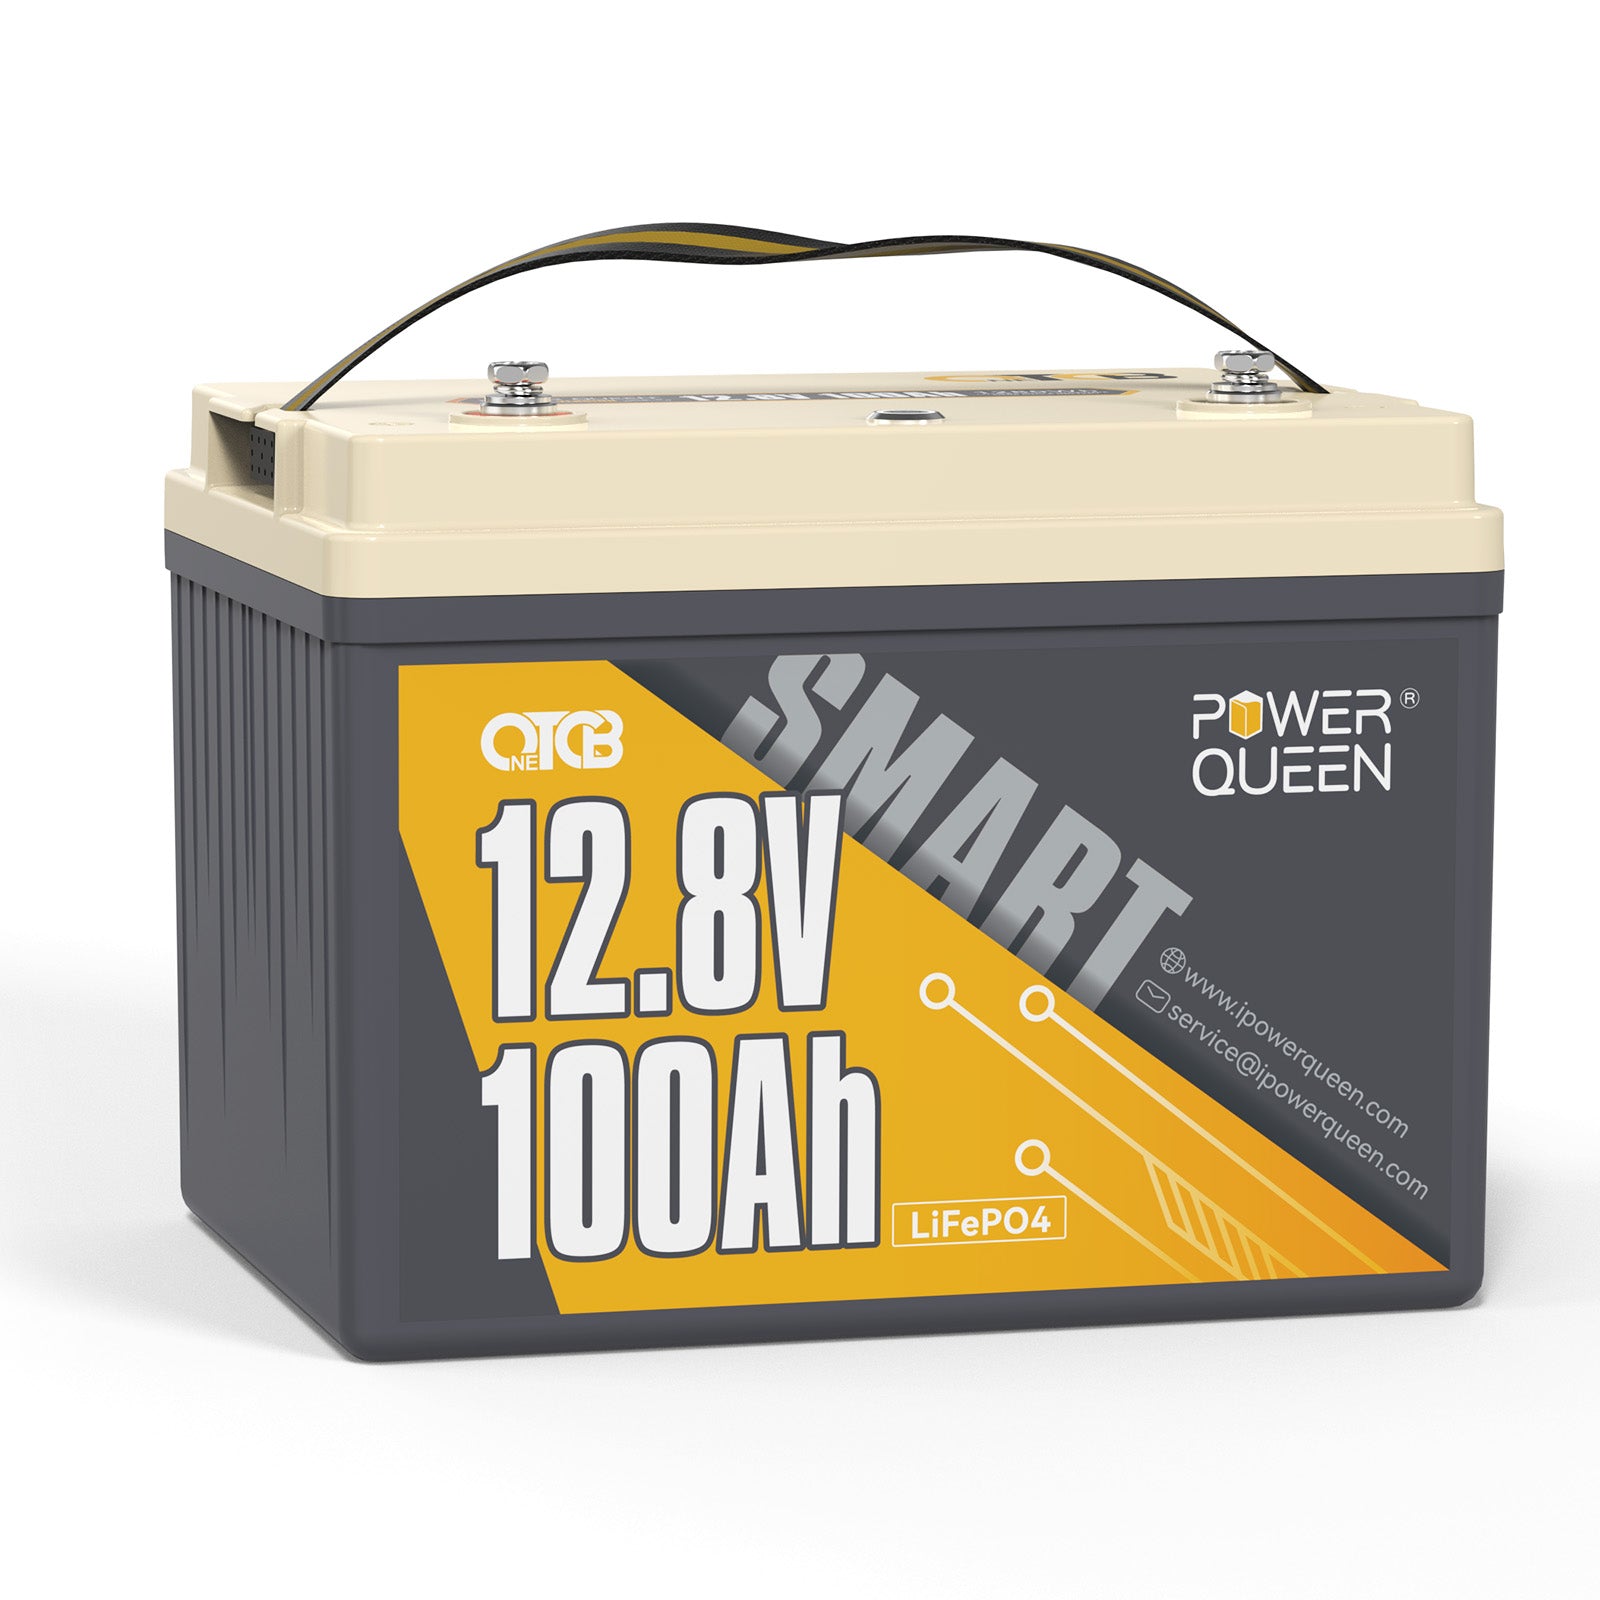 【0% IVA】Batería Power Queen 12V 100Ah de baja temperatura OTCB LiFePO4 con BMS de 100A incorporado